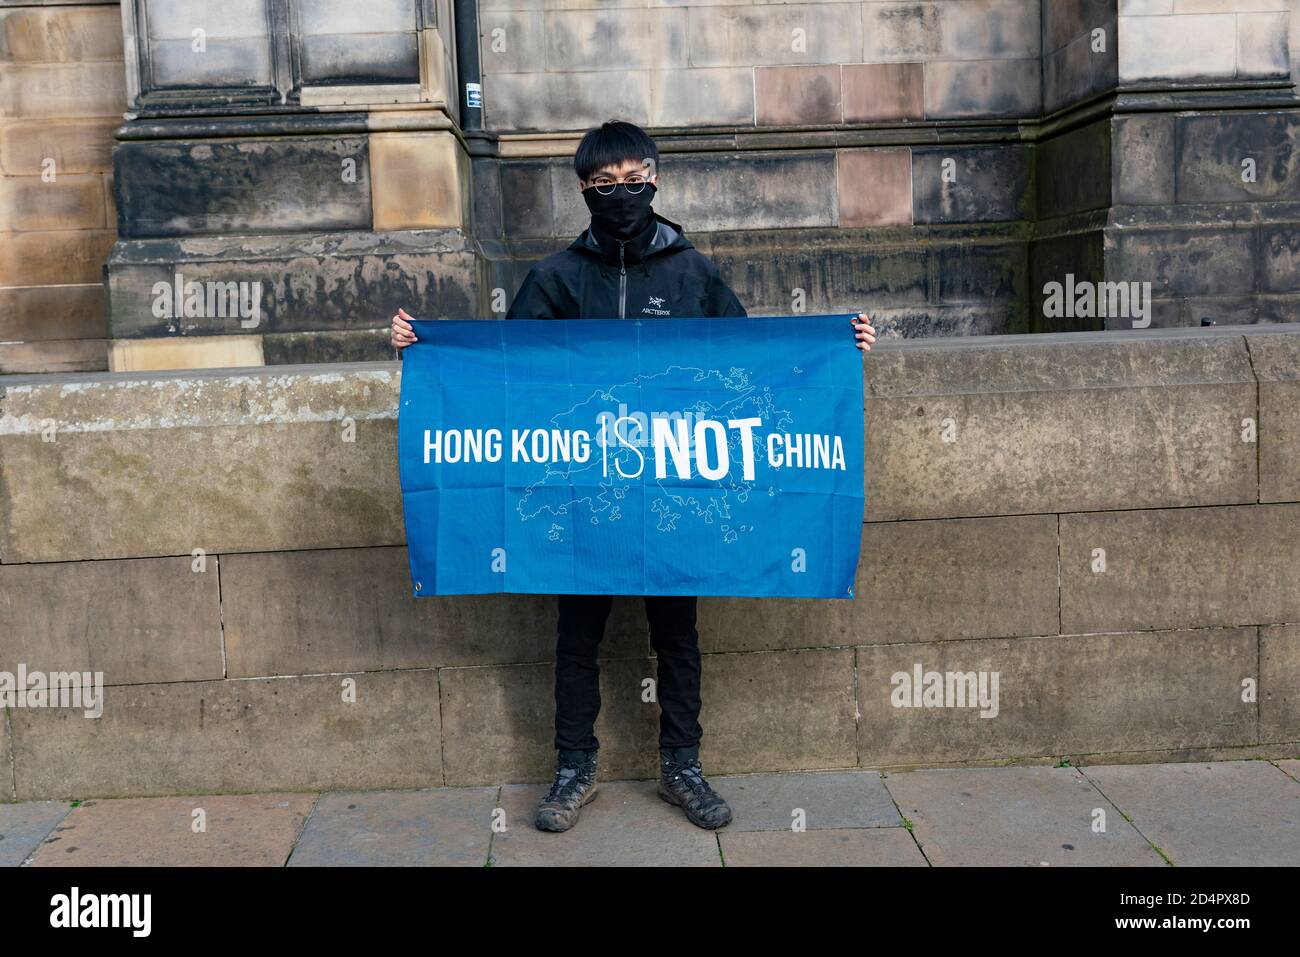 Édimbourg, Écosse, Royaume-Uni. 10 octobre 2020. Les manifestants du mouvement pro-démocratie de Hong Kong ont organisé aujourd'hui une manifestation à la cathédrale St Giles. Les manifestants protestaient contre la persécution des Uyghurs appartenant à la minorité ethnique en Chine et contre les nouvelles lois de sécurité nationale imposées à Hong Kong par la Chine. Les manifestants ont porté des marques faciales non seulement par mesure de précaution, mais aussi pour garder l'anonymat.la loi sur la sécurité nationale signifie que les ressortissants de Hong Kong peuvent être persécutés pour avoir protesté n'importe où dans le monde. Un couple chinois continental dans un appartement en face a agité les manifestants et les a filmés. Banque D'Images